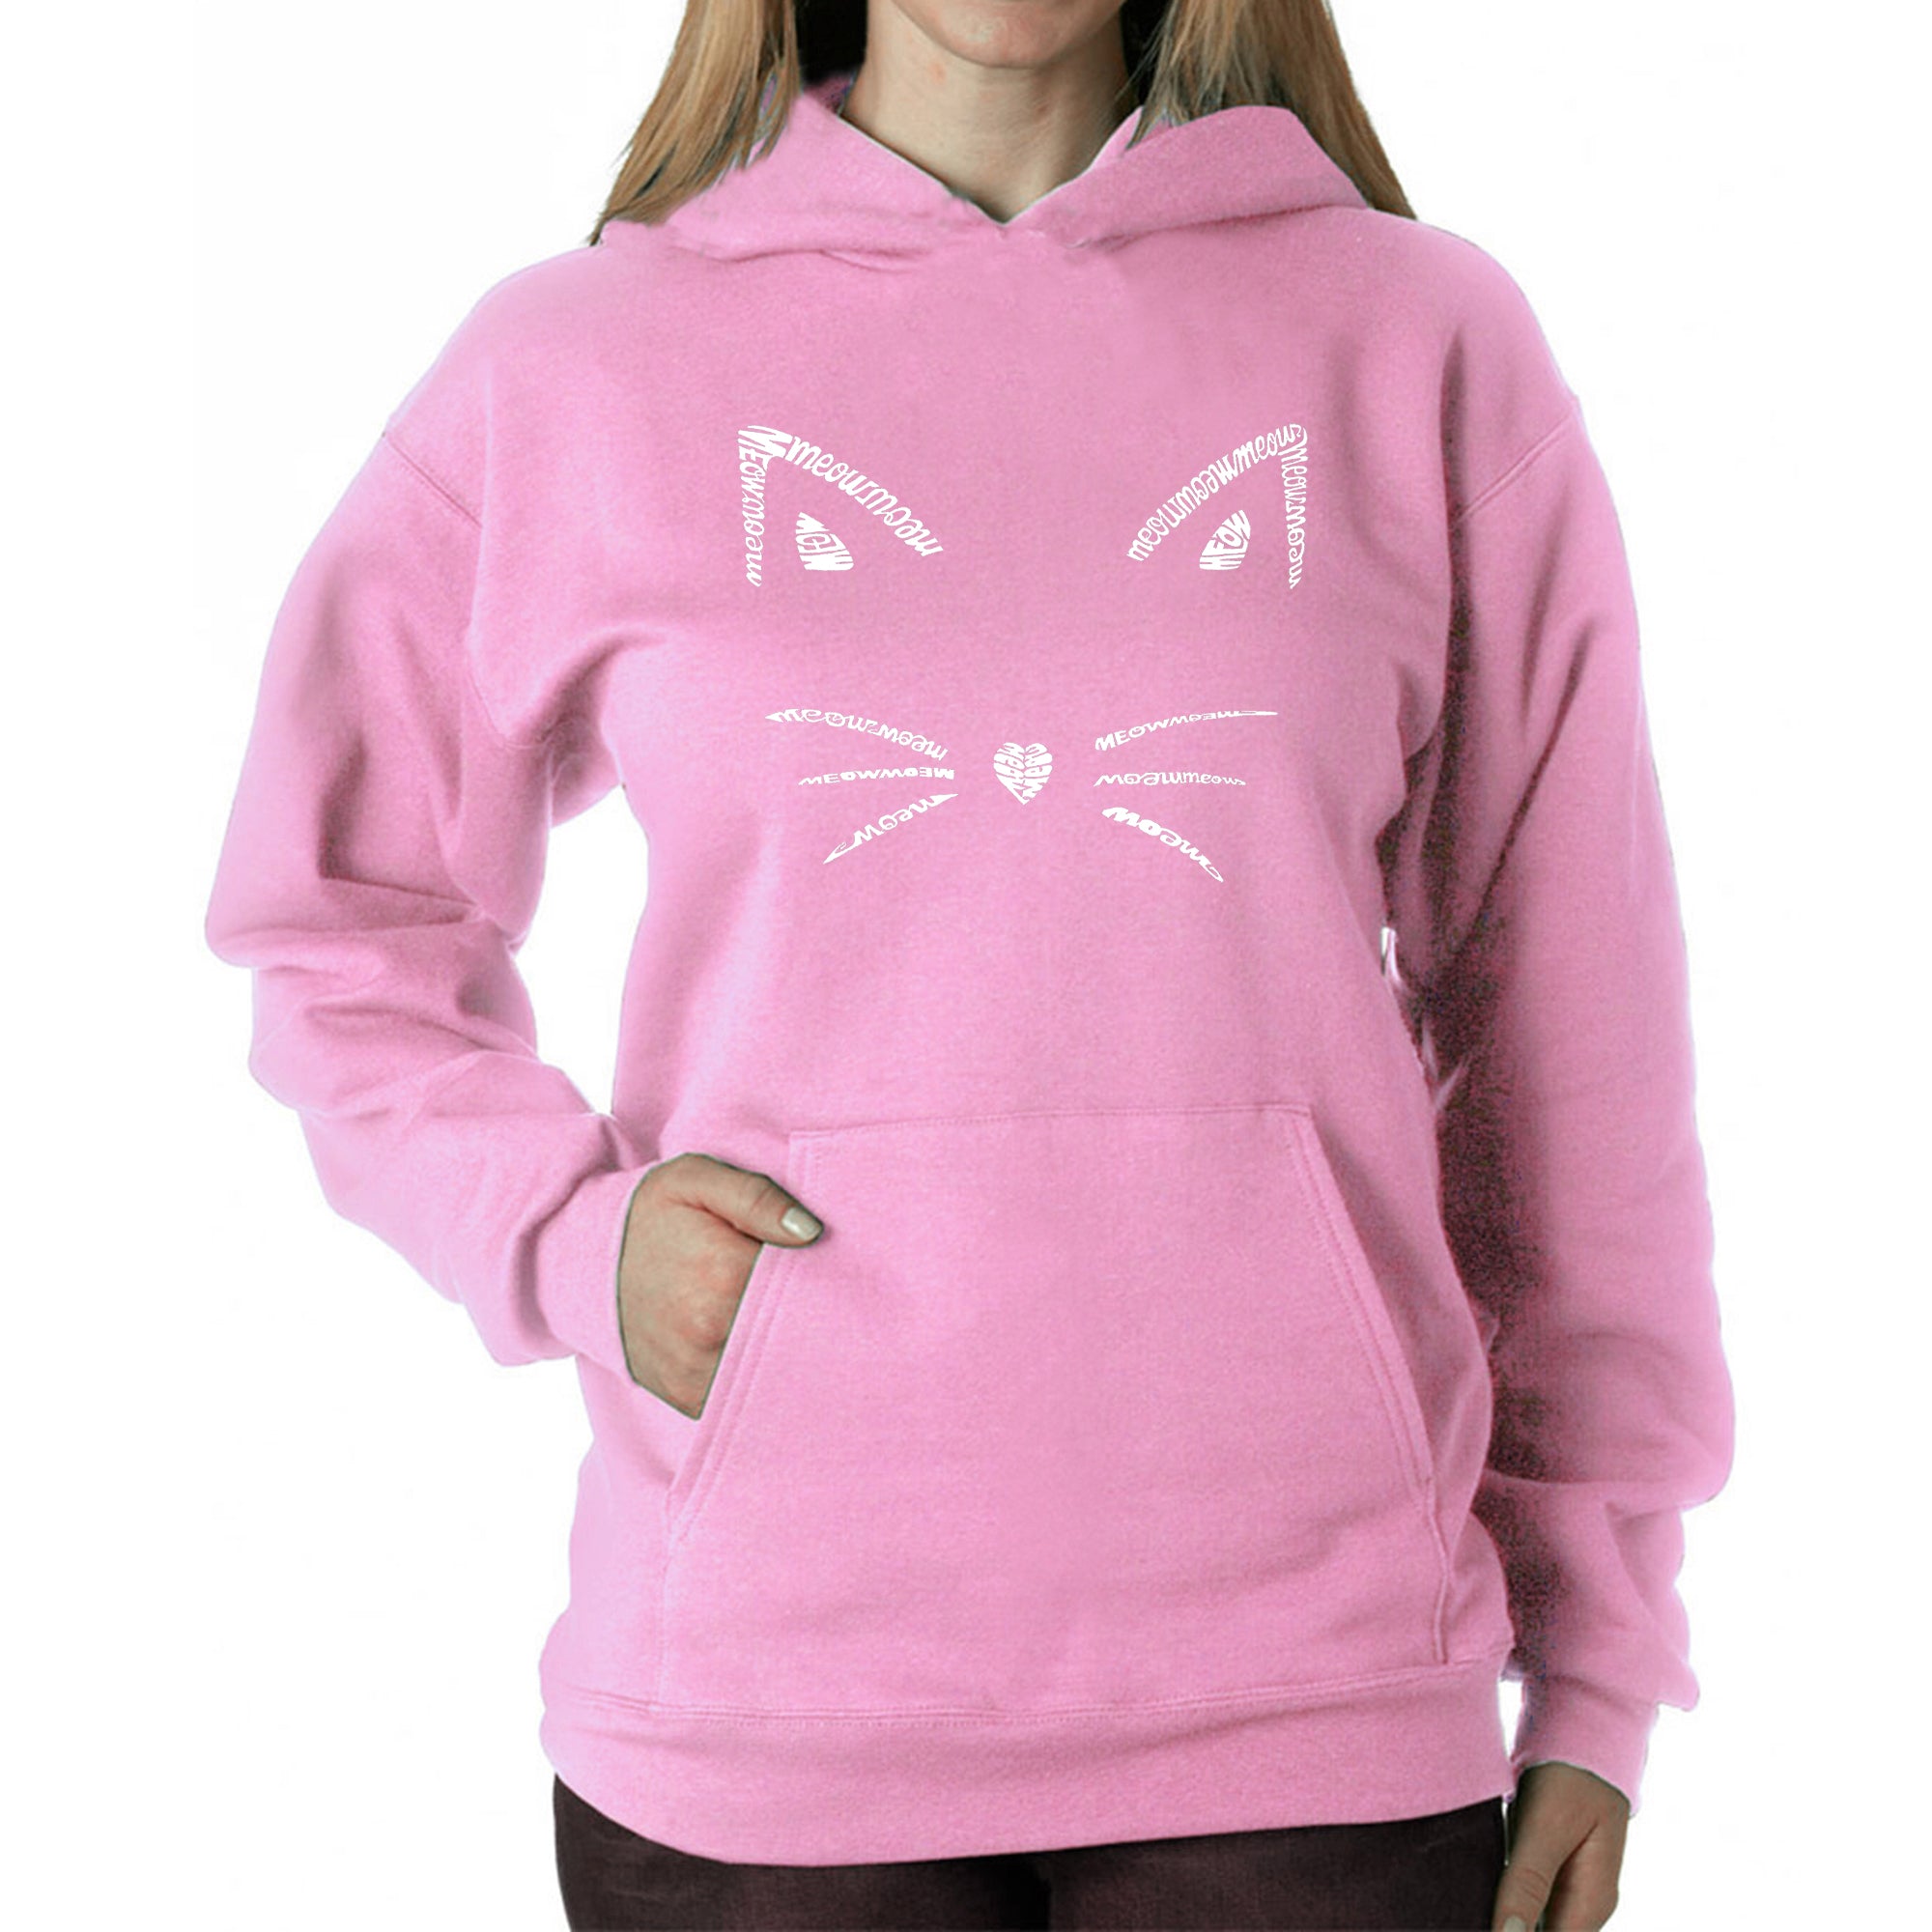 Whiskers - Women's Word Art Hooded Sweatshirt - Pink - Medium